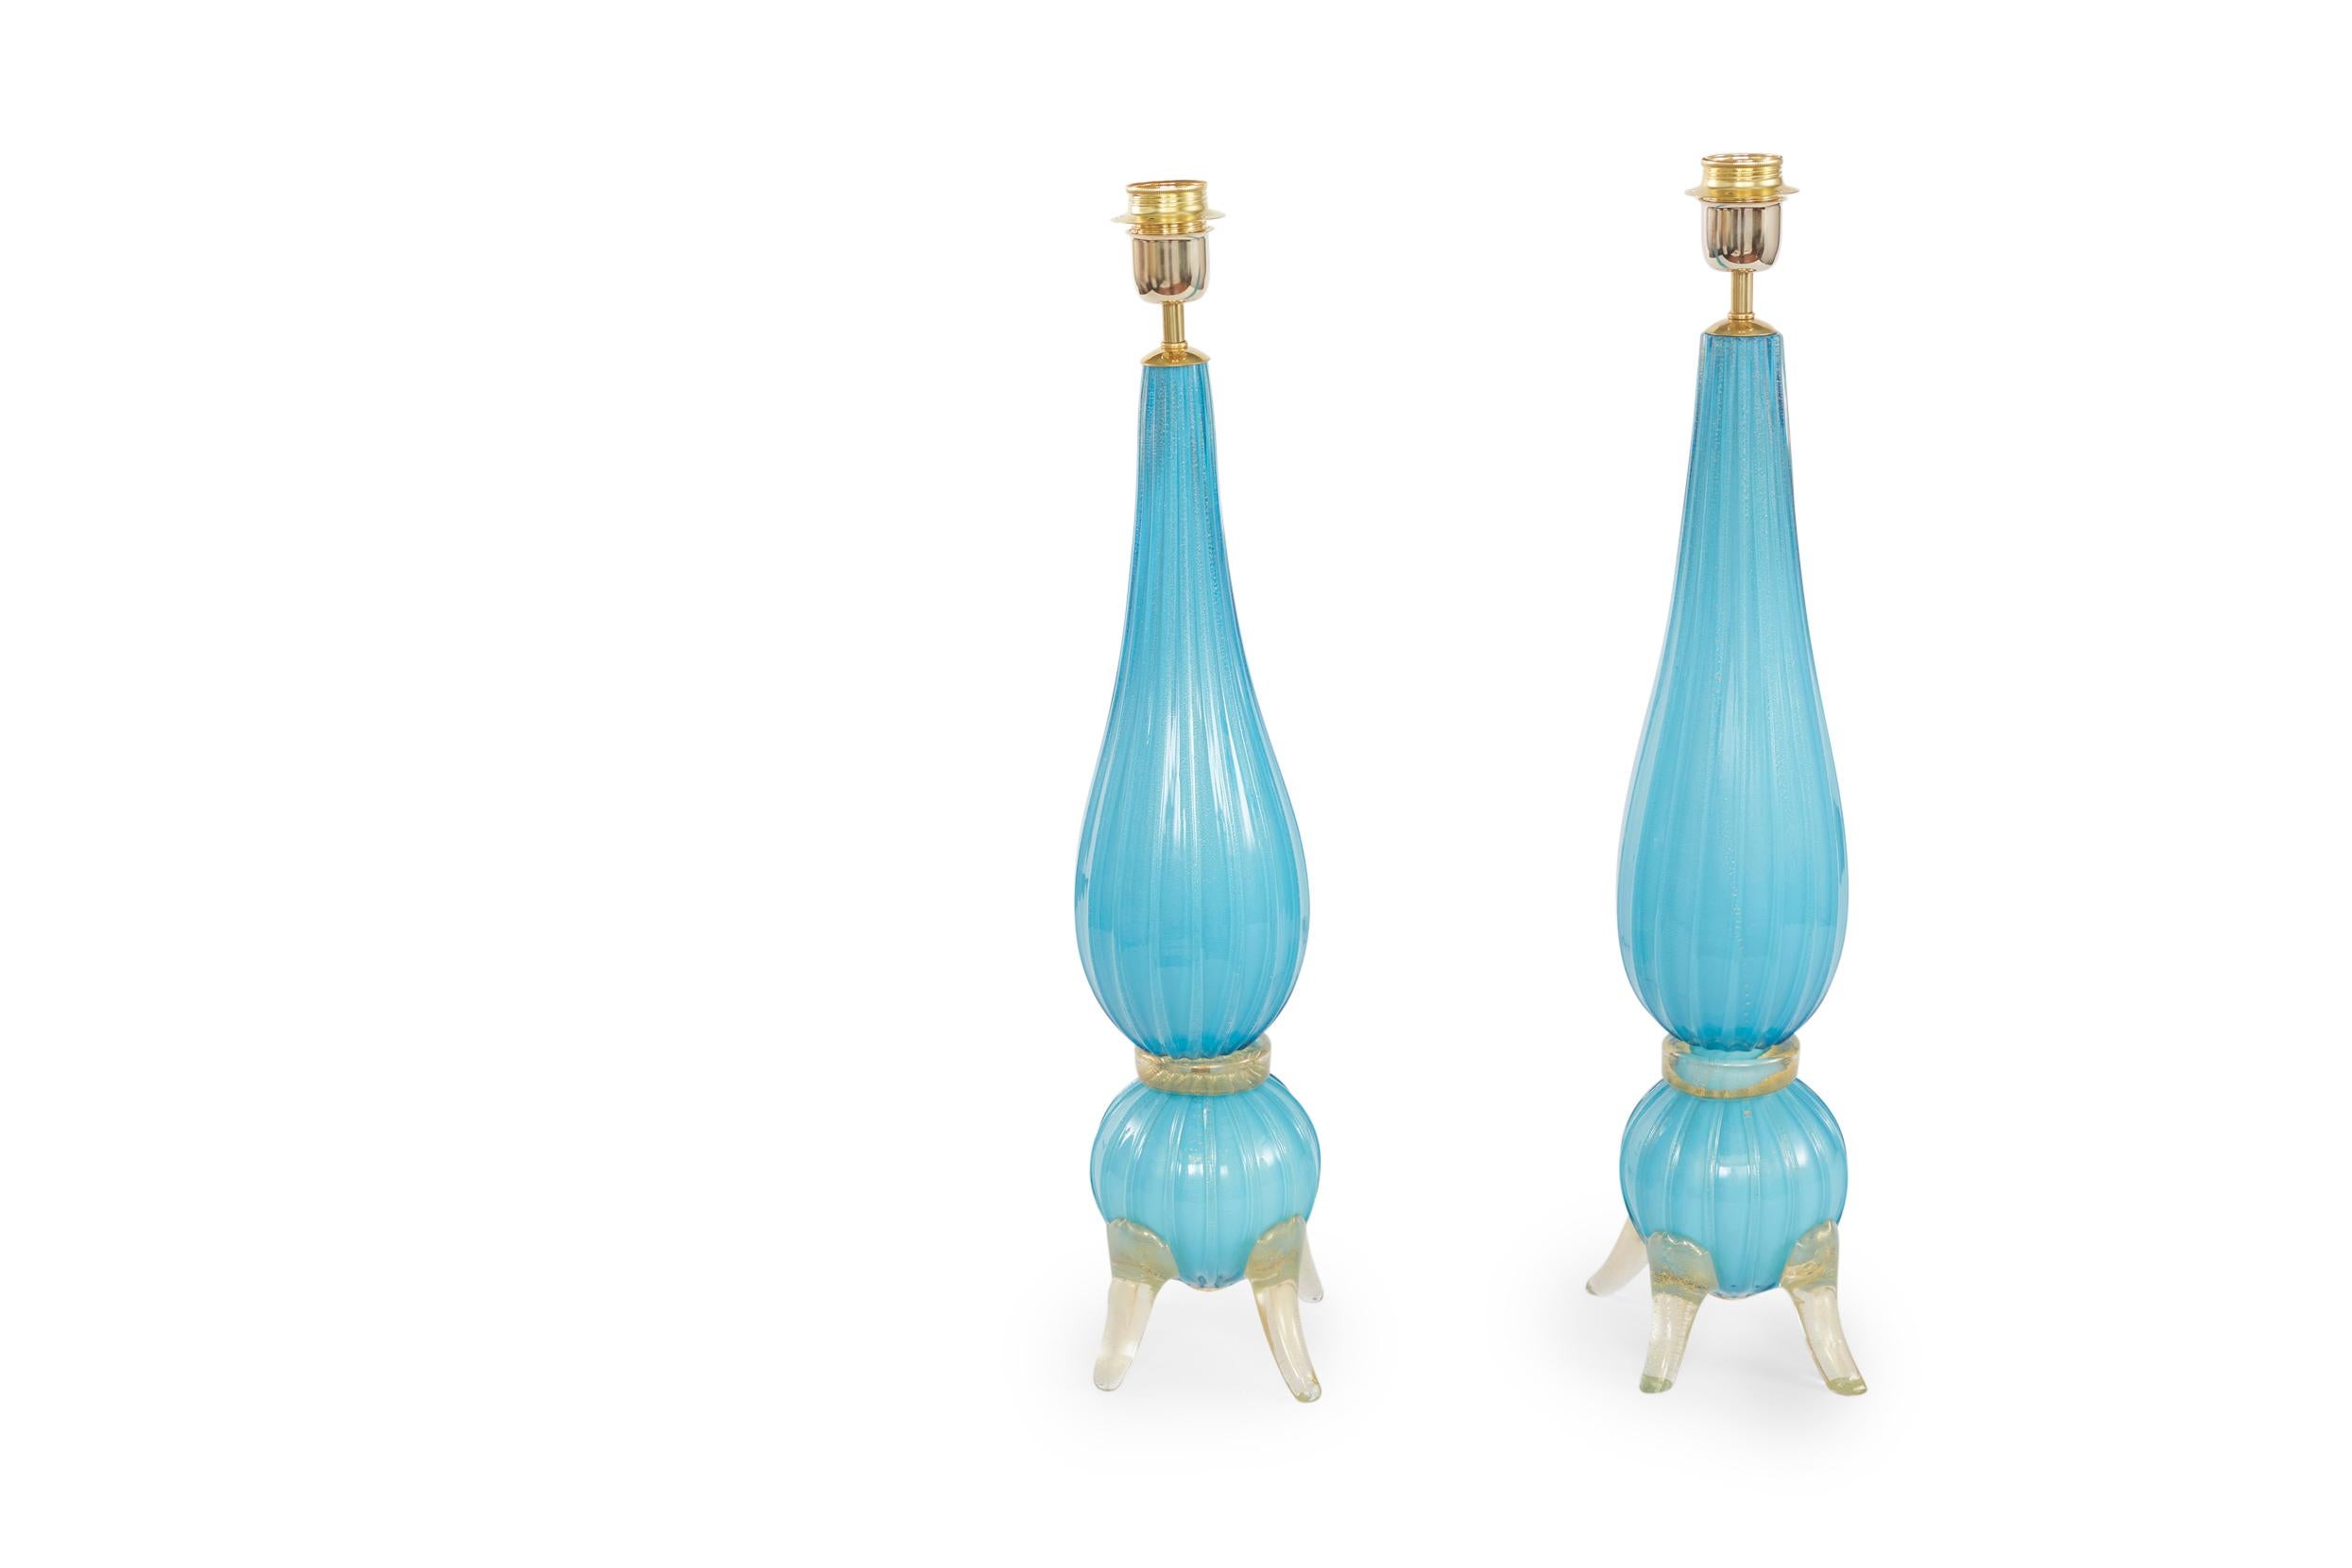 Mitte des 20. Jahrhunderts Muranoglas mit Goldflecken Design Details fußte Paar Tischlampe. Jede Lampe ist in einwandfreiem Zustand. Umverdrahtet für den US-Gebrauch. Jede Lampe ist etwa 26 cm hoch und hat einen Durchmesser von 5,5 cm. Jeder runde